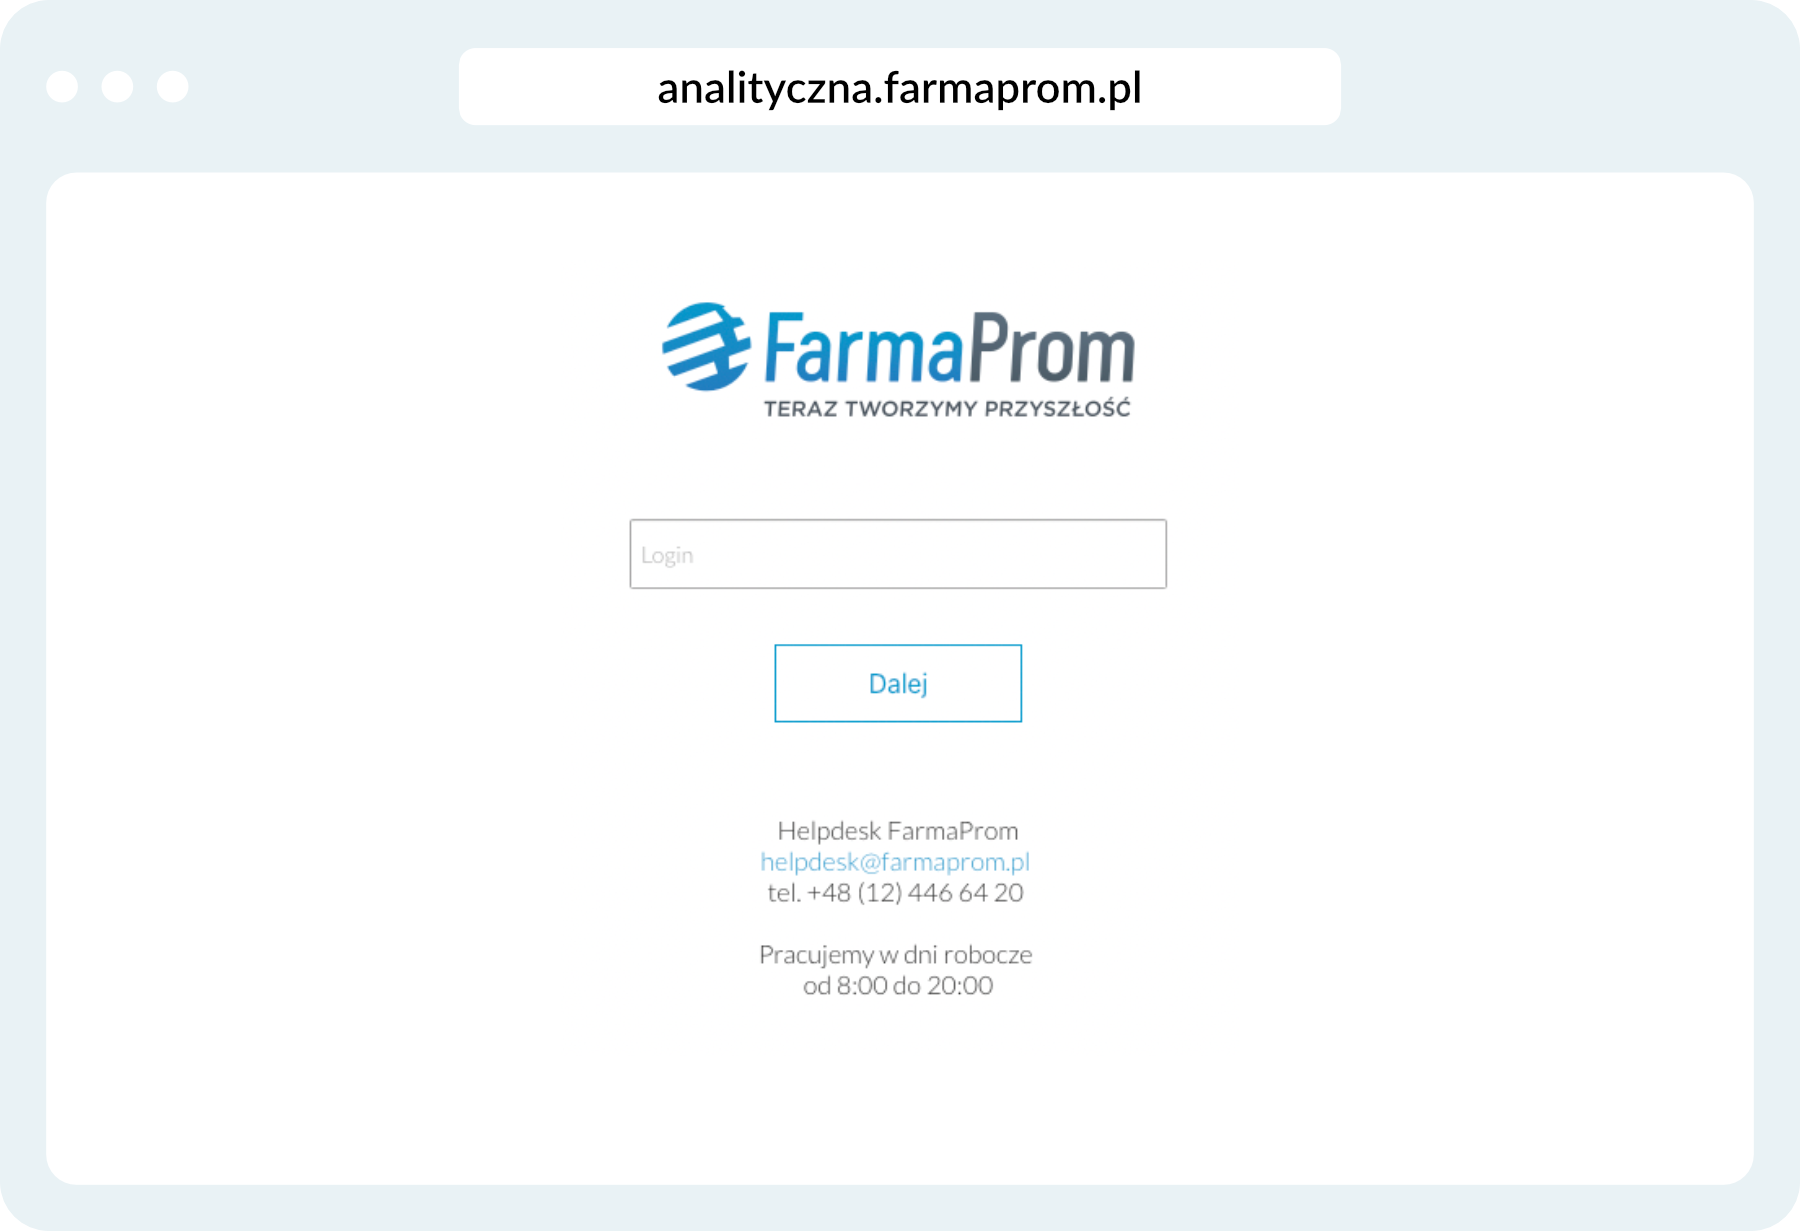 Logowanie do aplikacji analitycznej FarmaProm